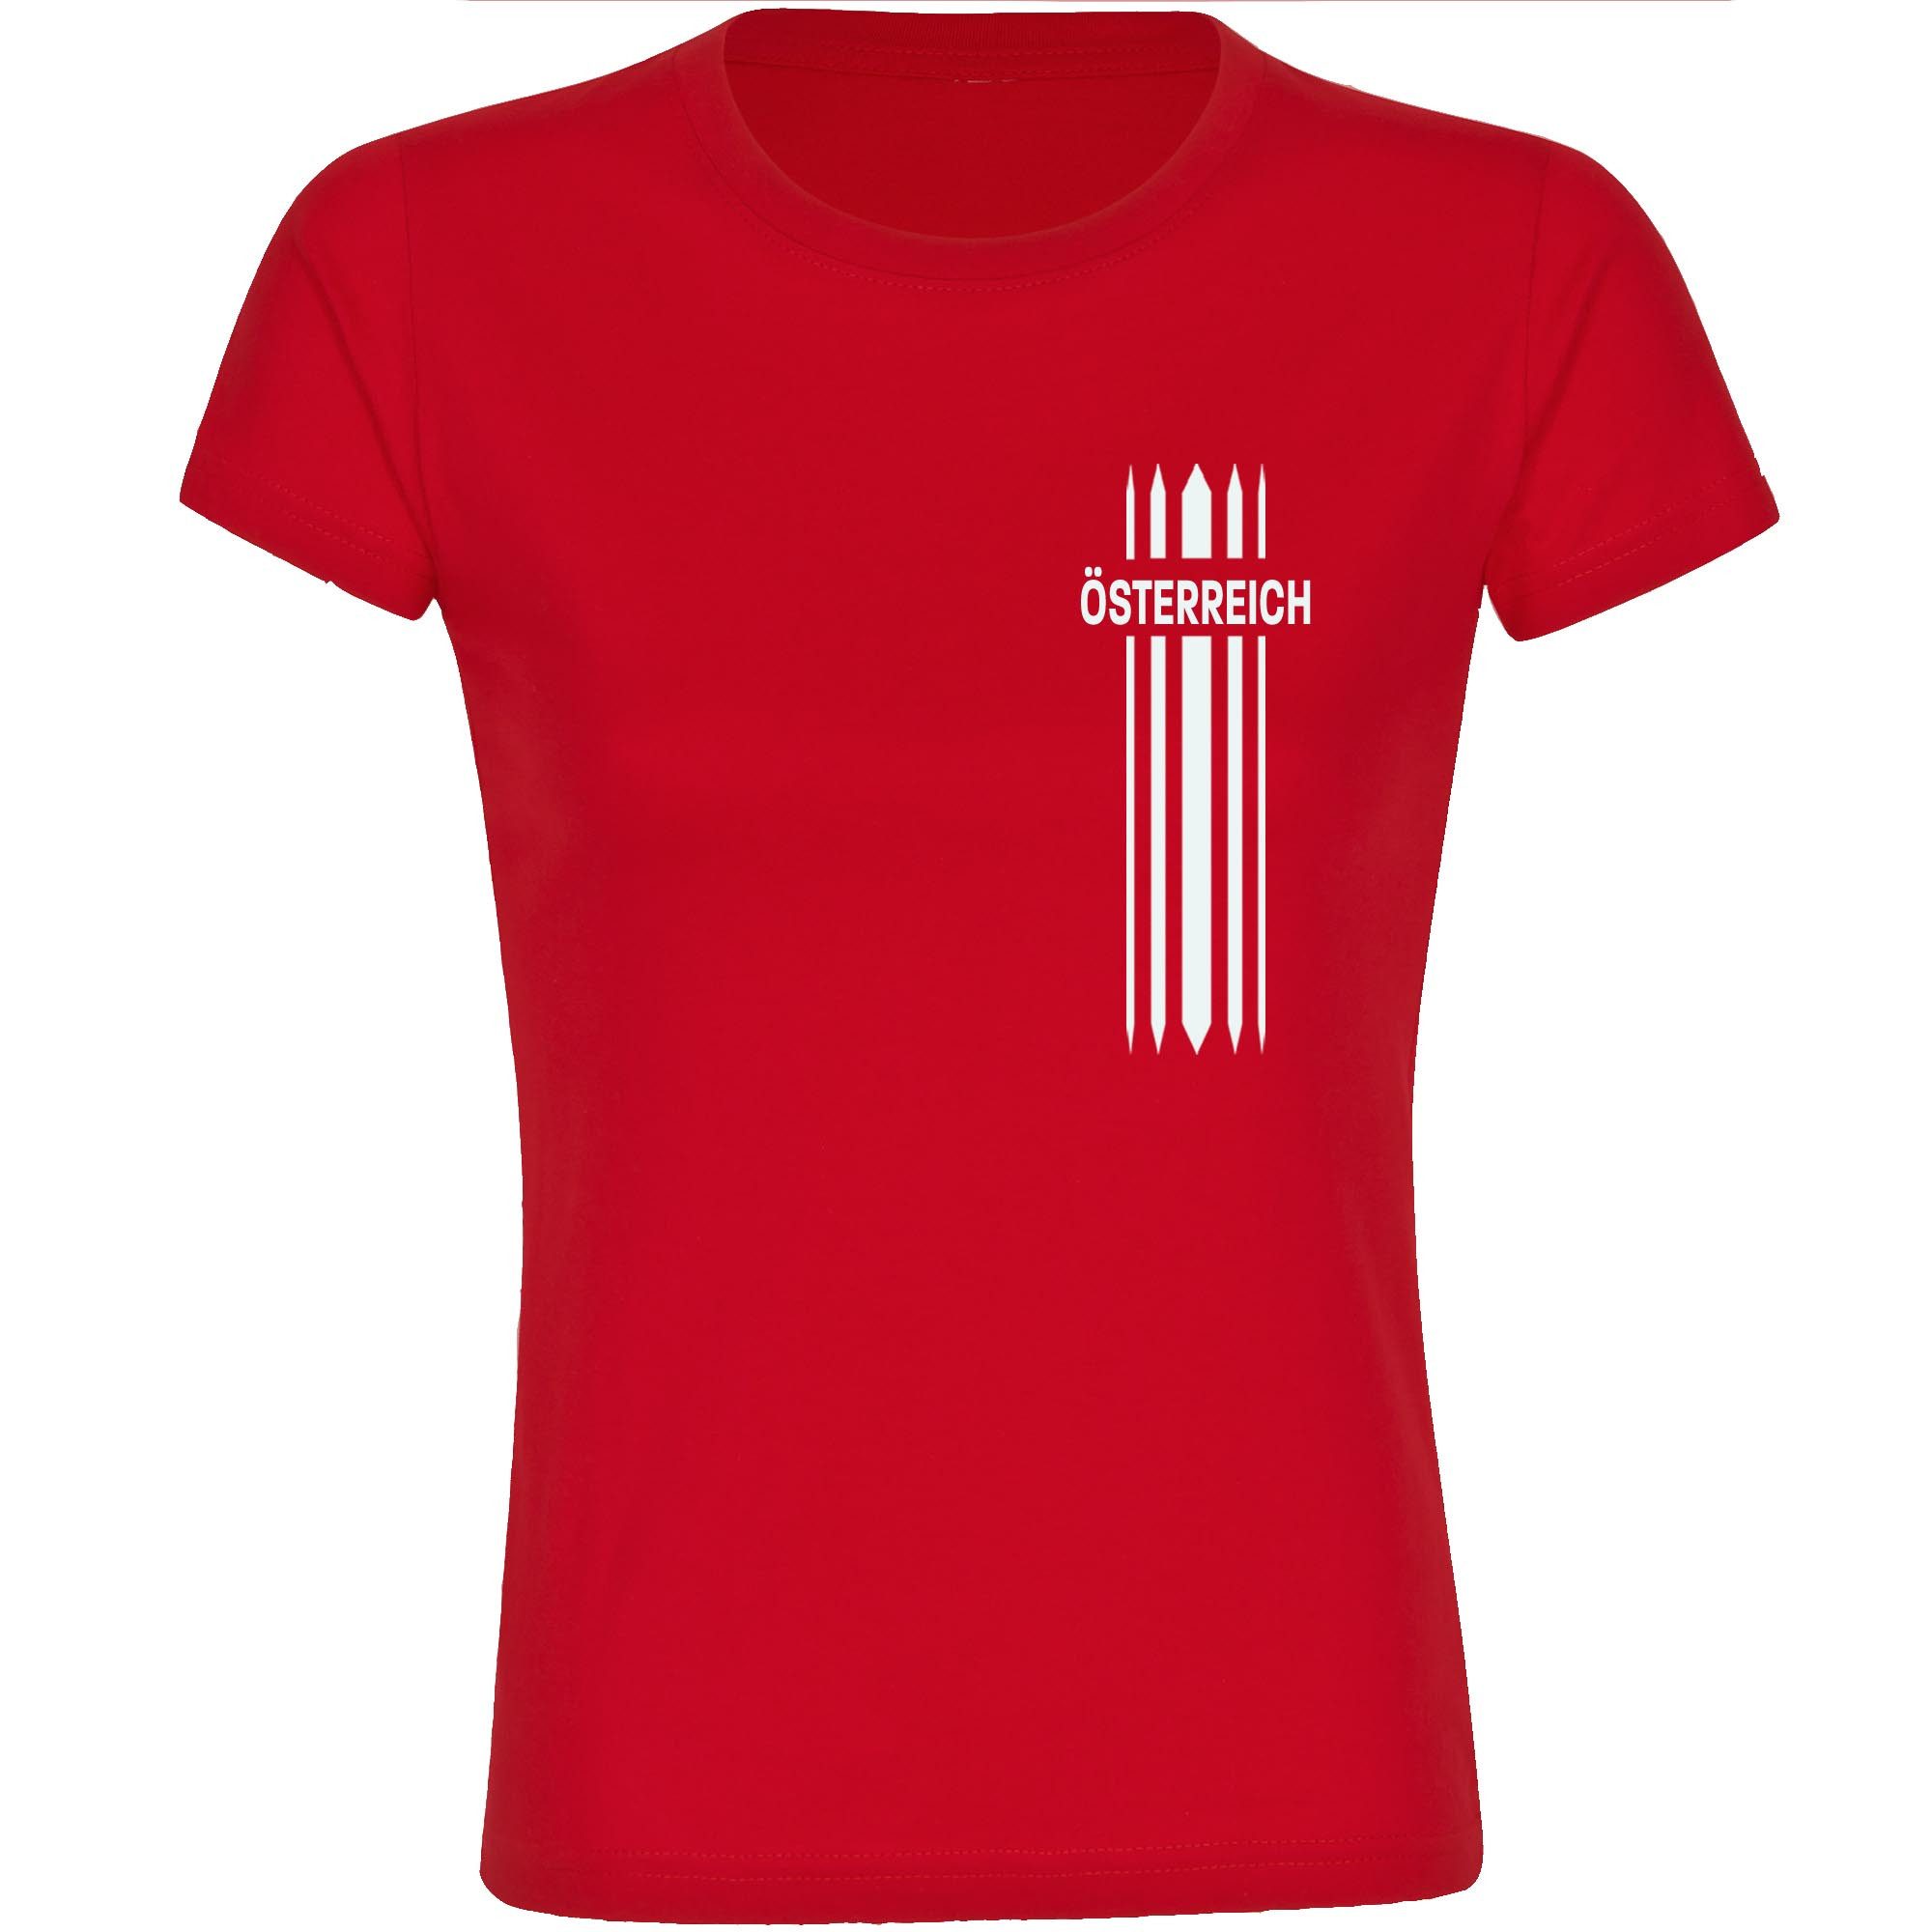 multifanshop T-Shirt Damen Österreich - Streifen - Frauen